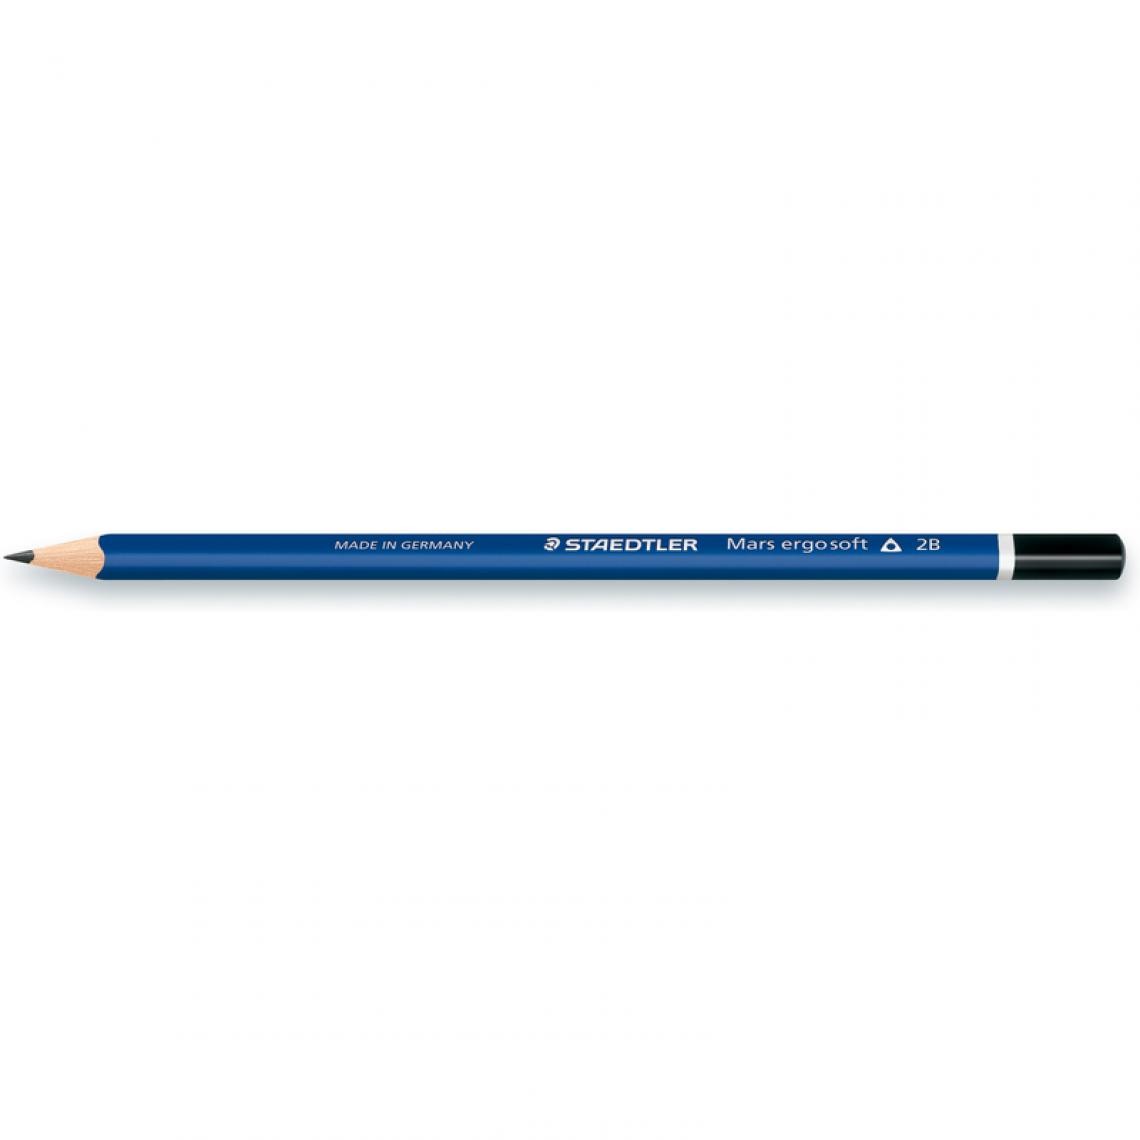 Staedtler - STAEDTLER Crayon Mars ergosoft, degré de dureté: 2B () - Outils et accessoires du peintre